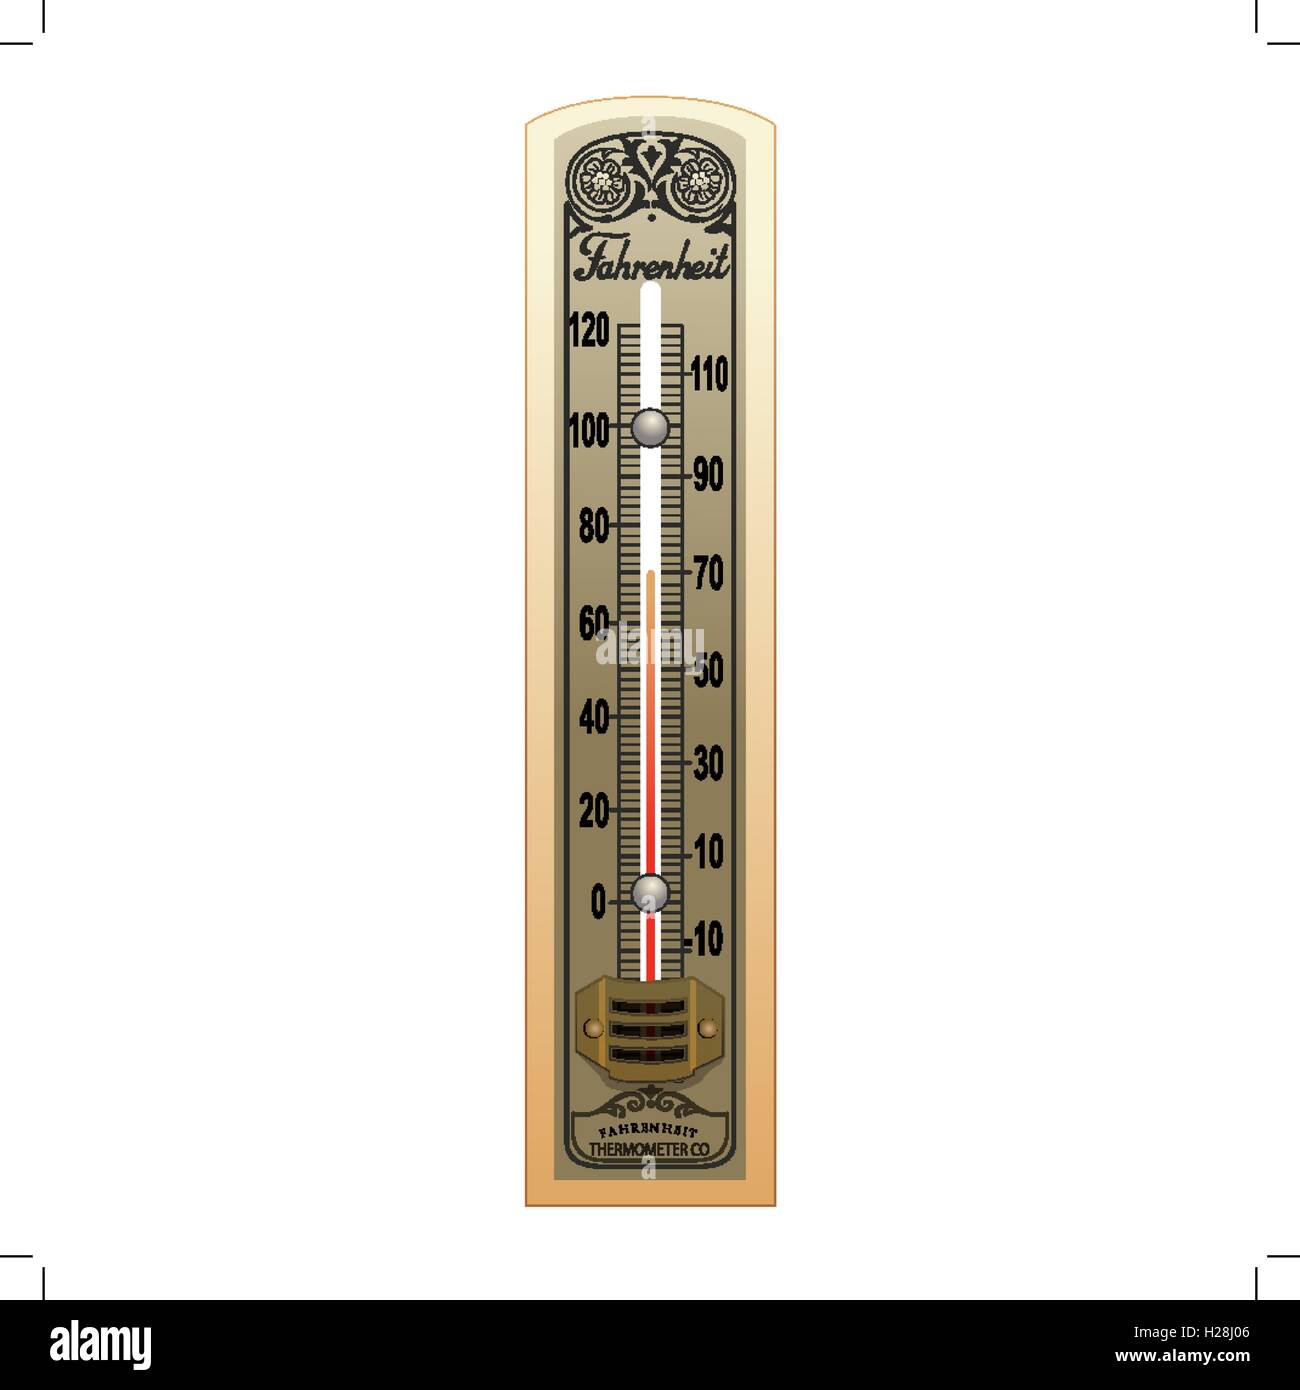 Altes thermometer Ausgeschnittene Stockfotos und -bilder - Alamy